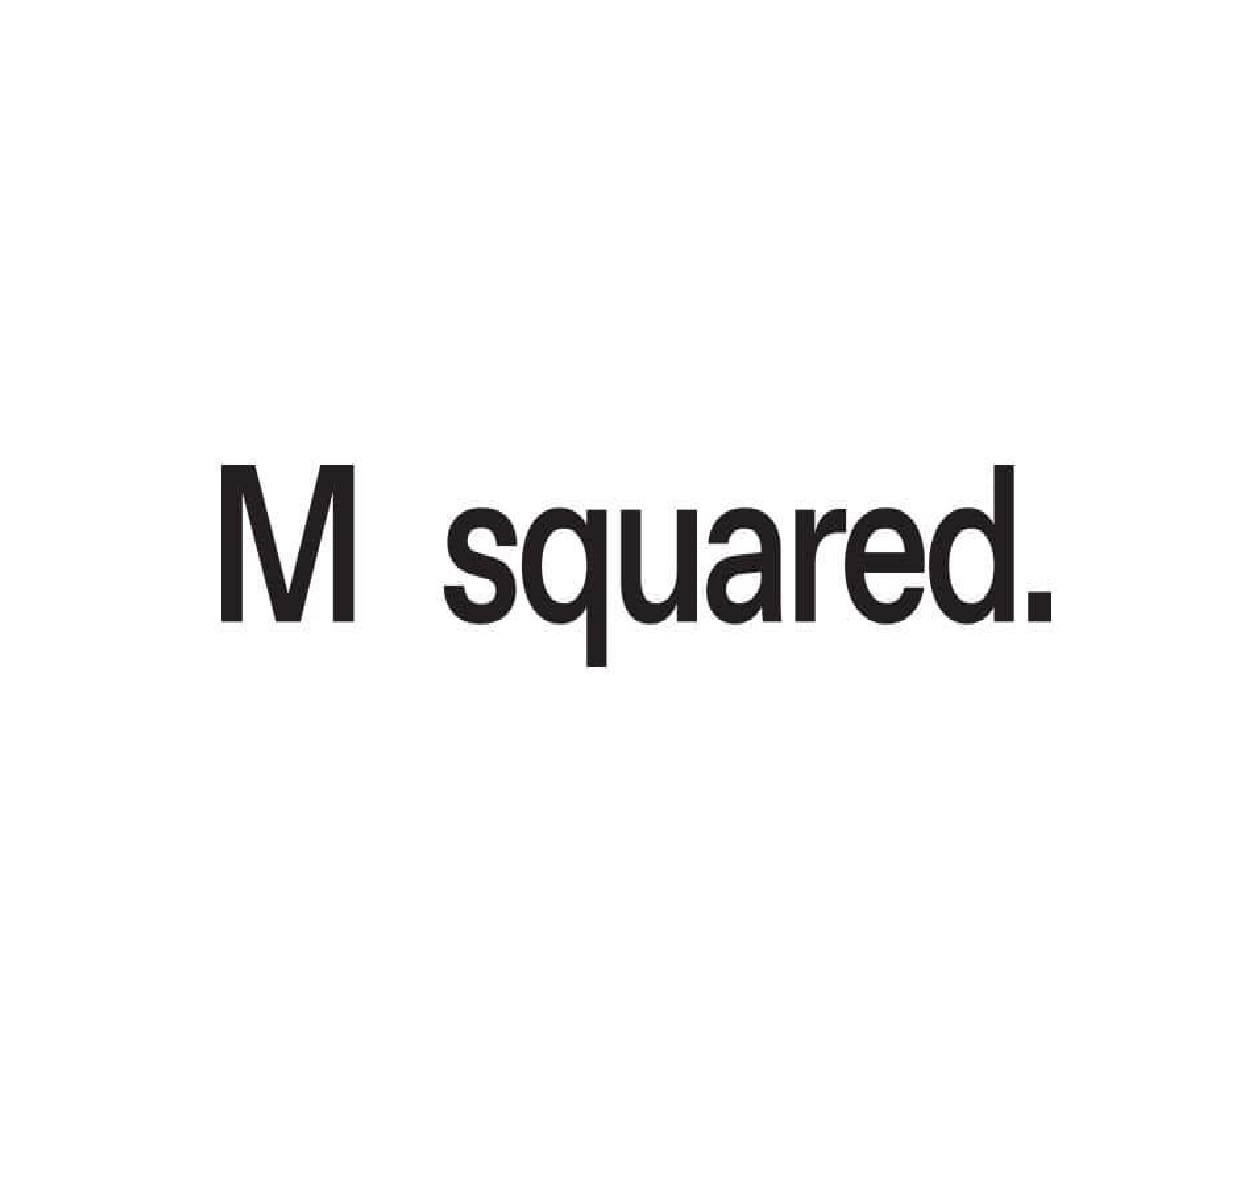 M Squared